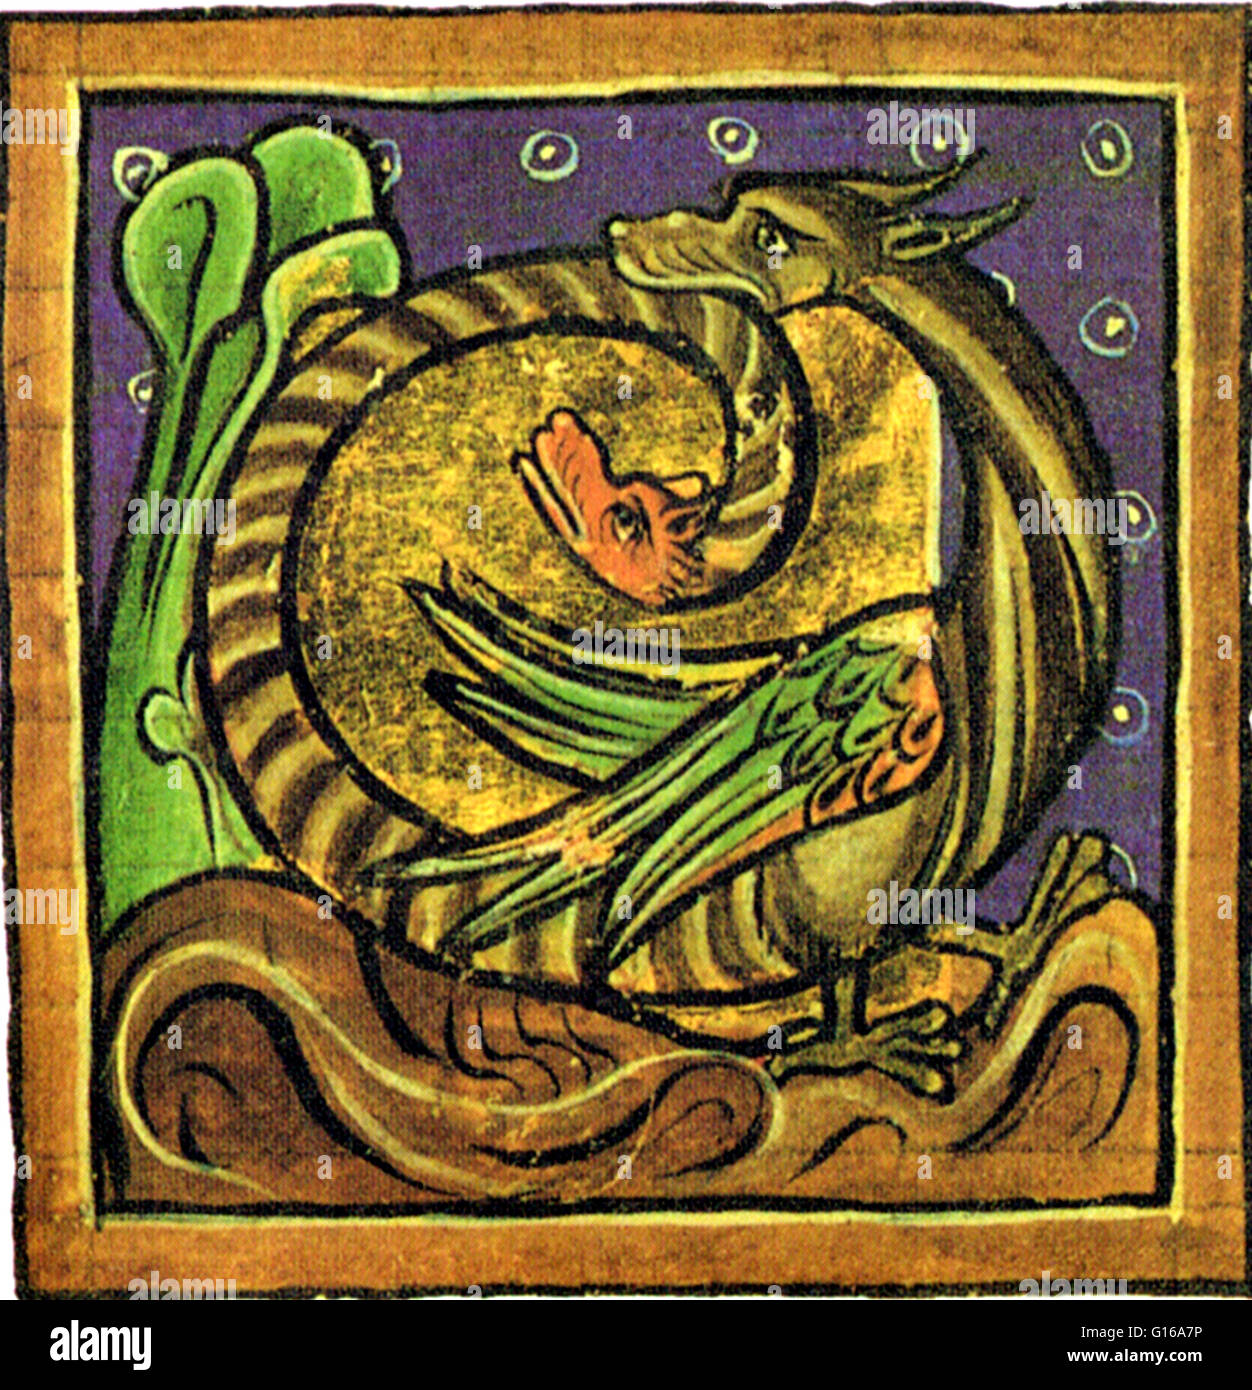 Manoscritto illuminato immagine da un bestiario medioevale dell'Amphisbaena mitologica ant-eating serpente con una testa in corrispondenza di ciascuna estremità. Secondo la mitologia greca, il amphisbaena è nata dal sangue che gocciolava da Gorgone la testa della Medusa come pers Foto Stock